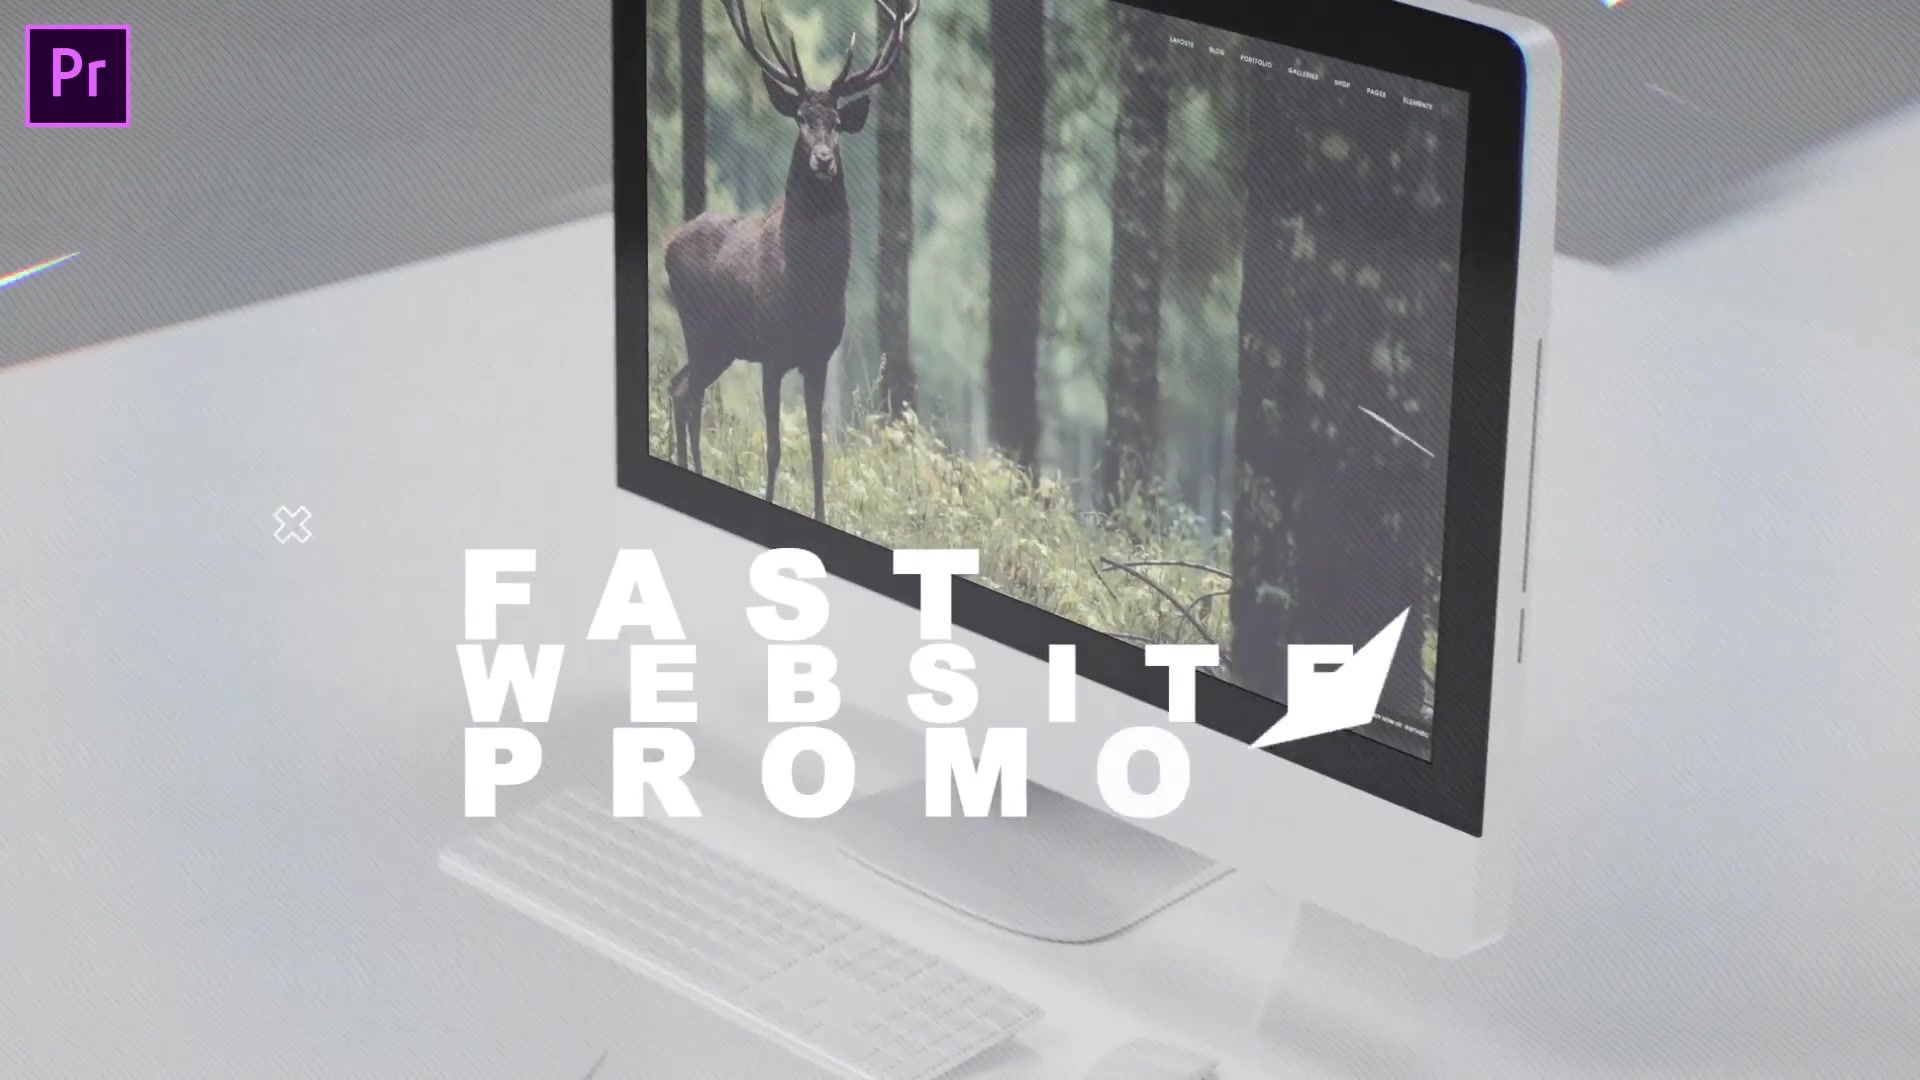 Fast Website Promo Premiere Pro version Videohive 33625280 Premiere Pro Image 7